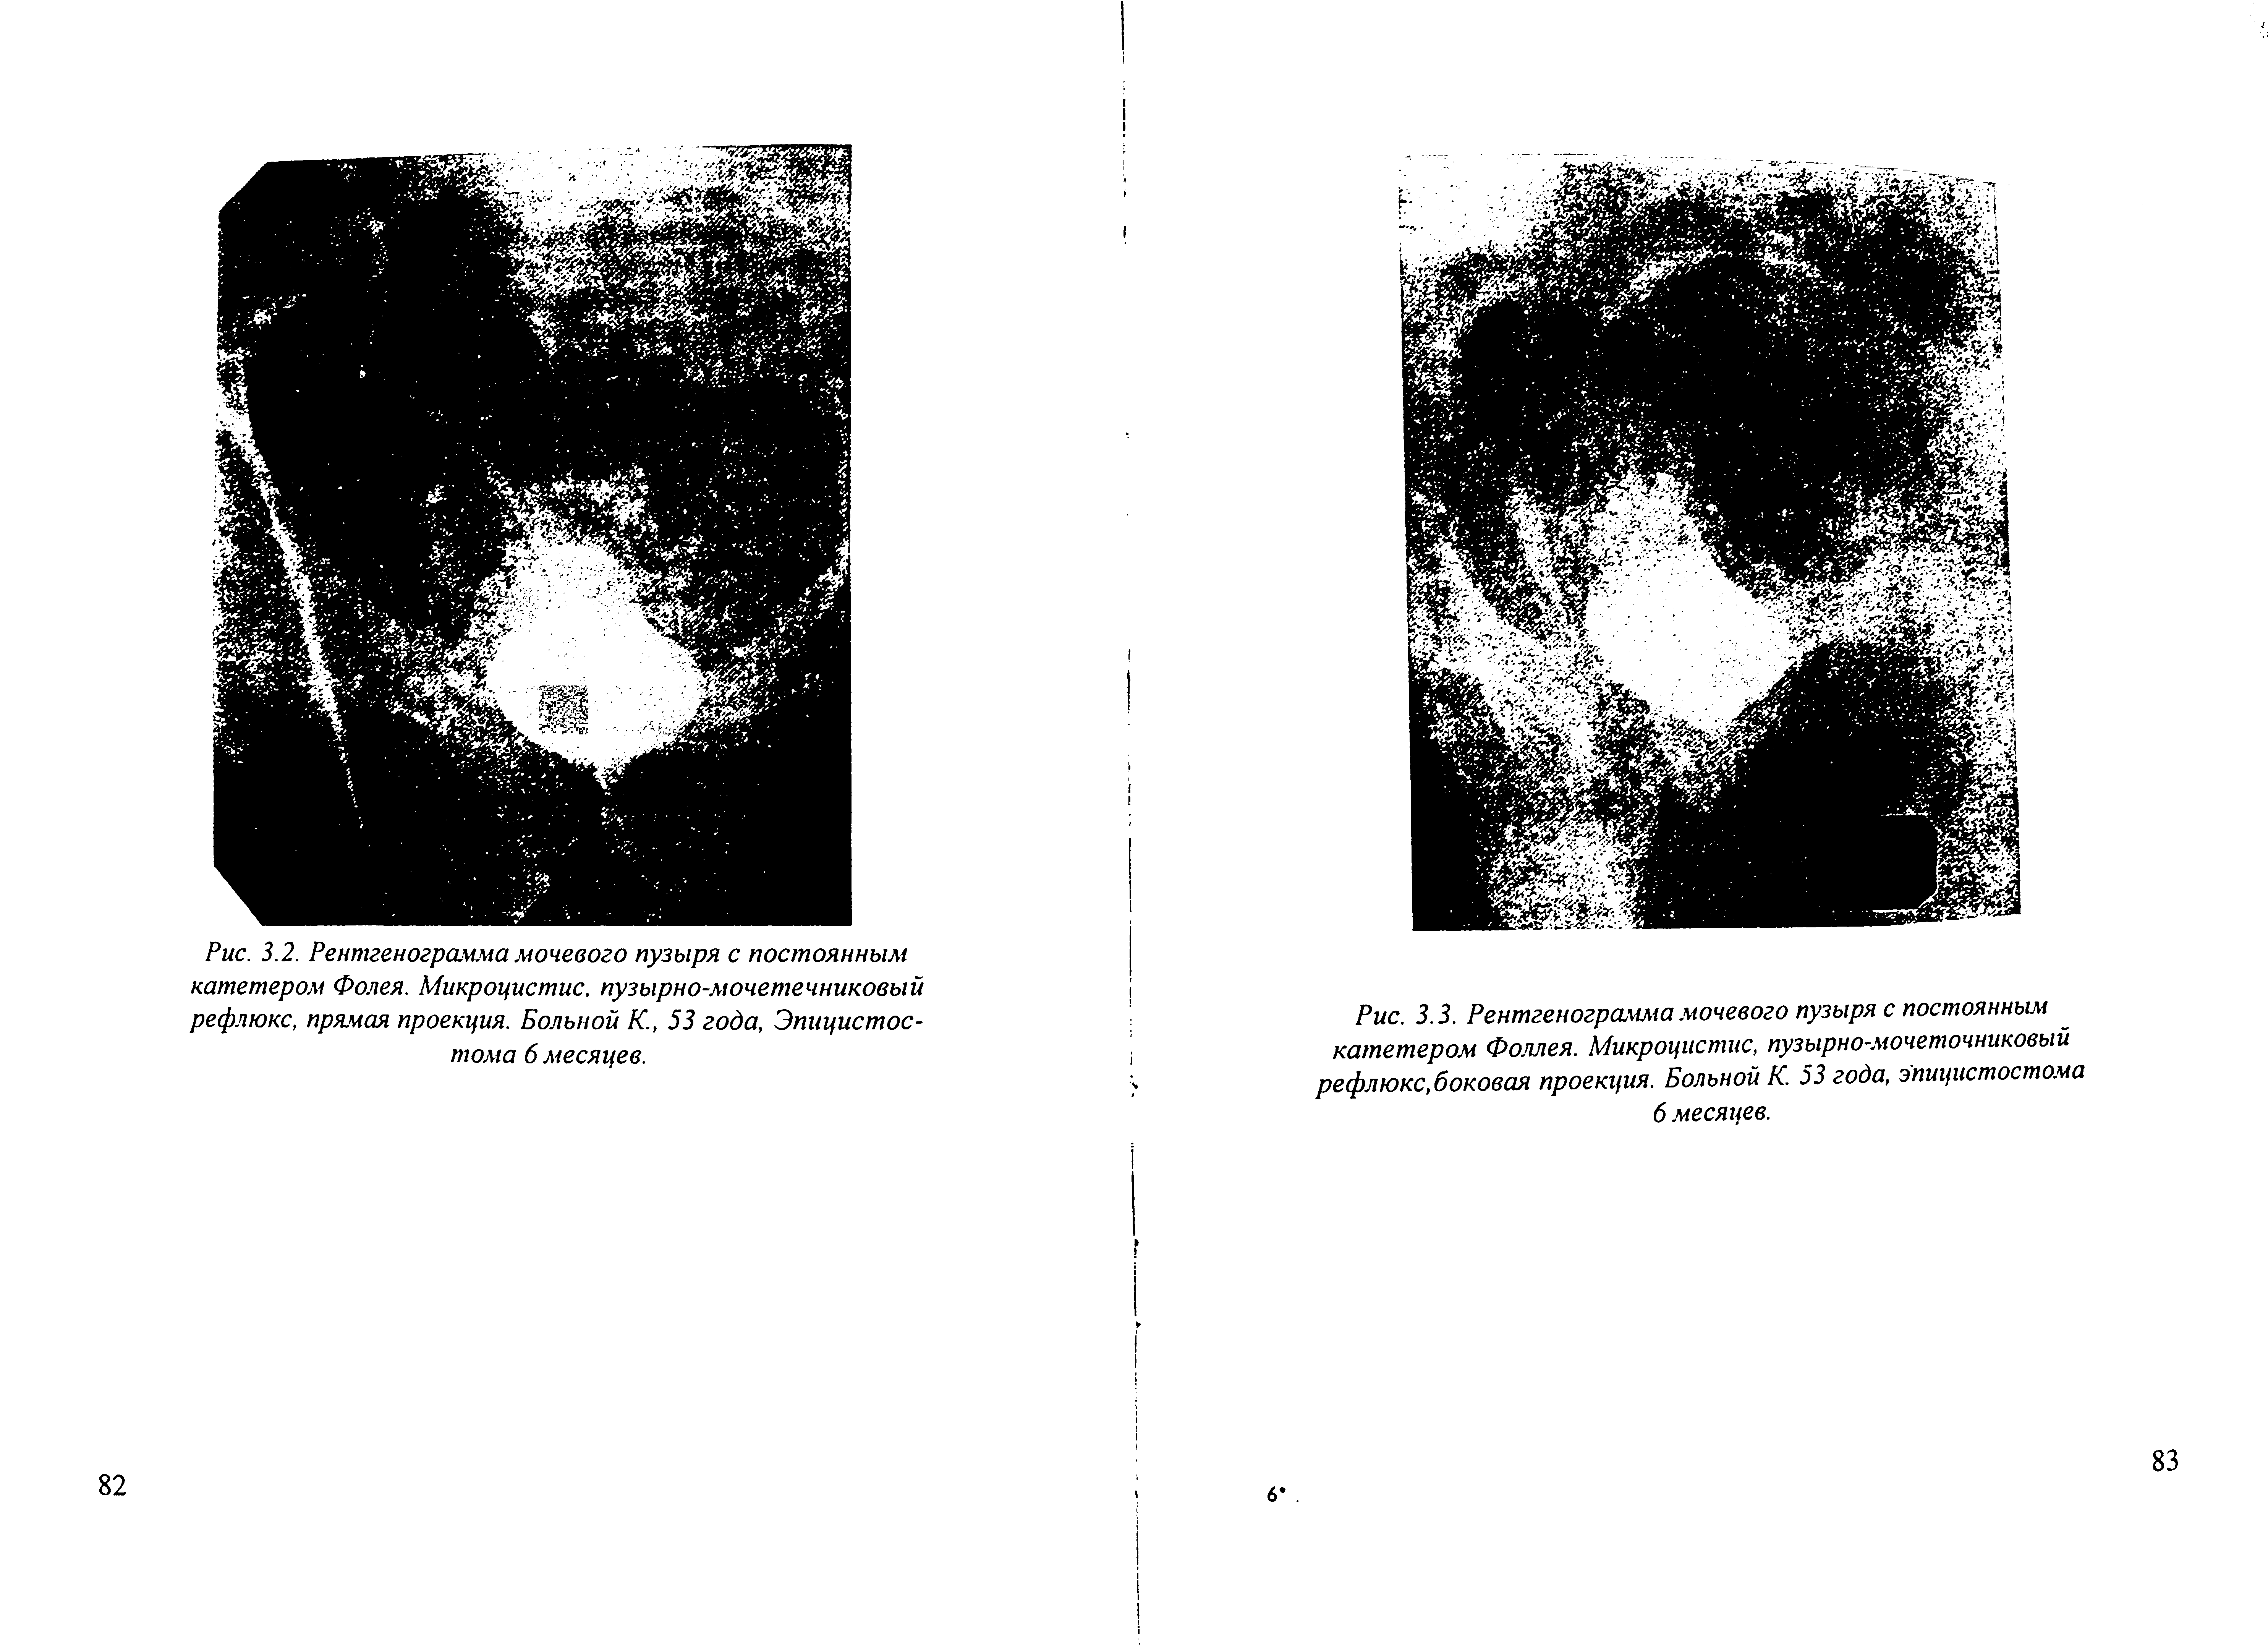 Рис. 3.3. Рентгенограмма мочевого пузыря с постоянным катетером Фоллея. Микроцистис, пузырно-мочеточниковый рефлюкс, боковая проекция. Больной К. 53 года, эпицистостома 6 месяцев.